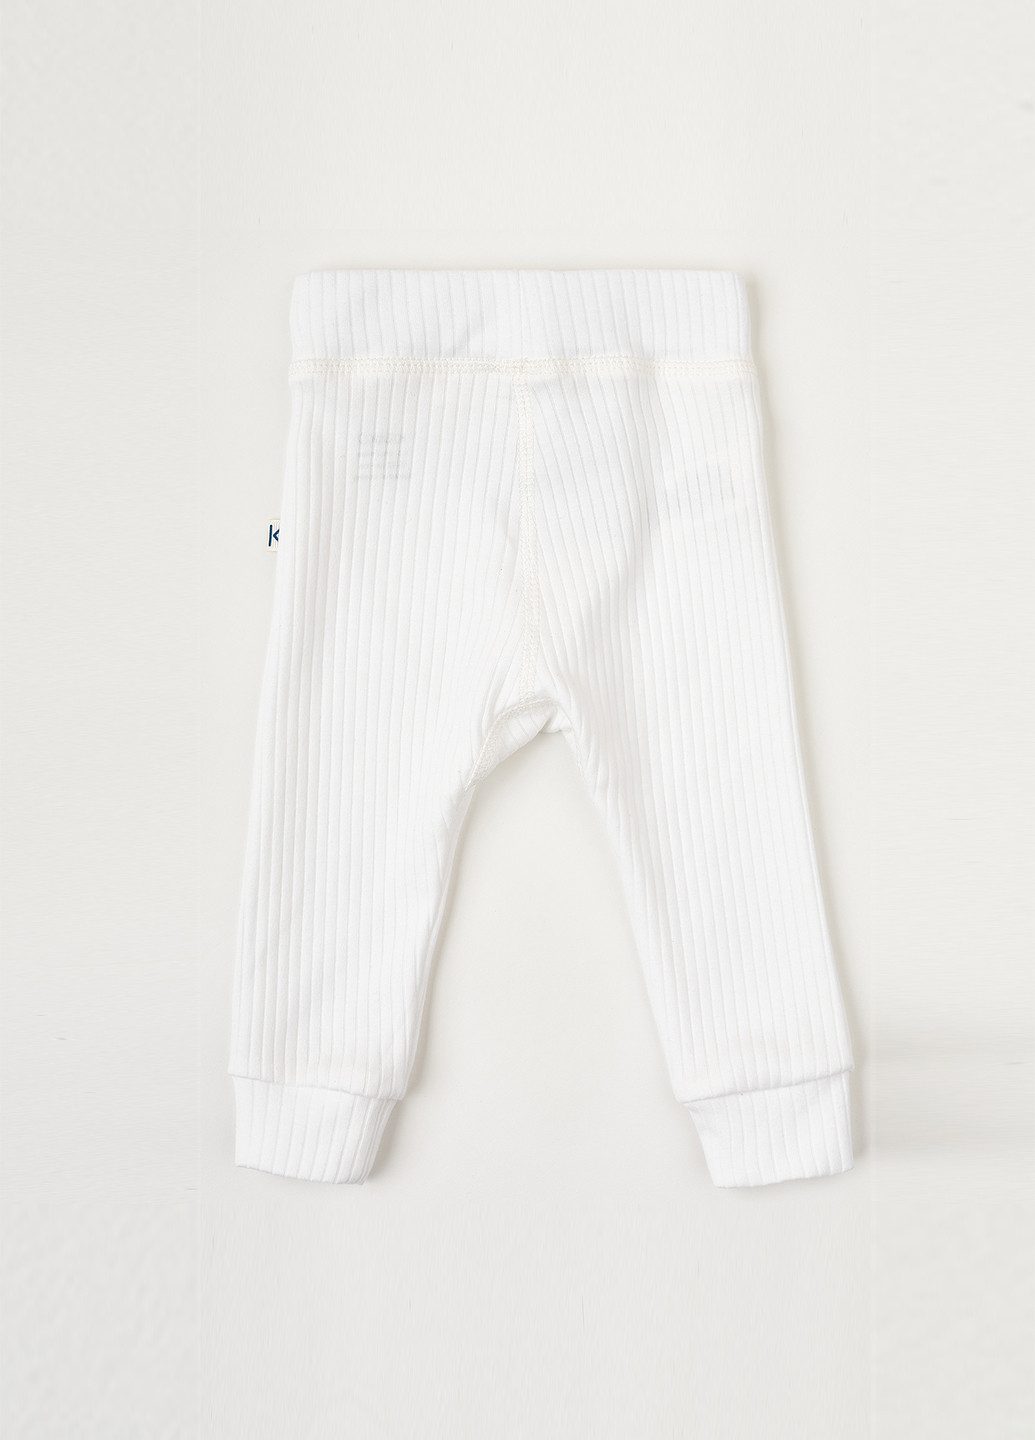 KRAKO штаны полоска белые для малышей белый повседневный хлопок производство - Украина